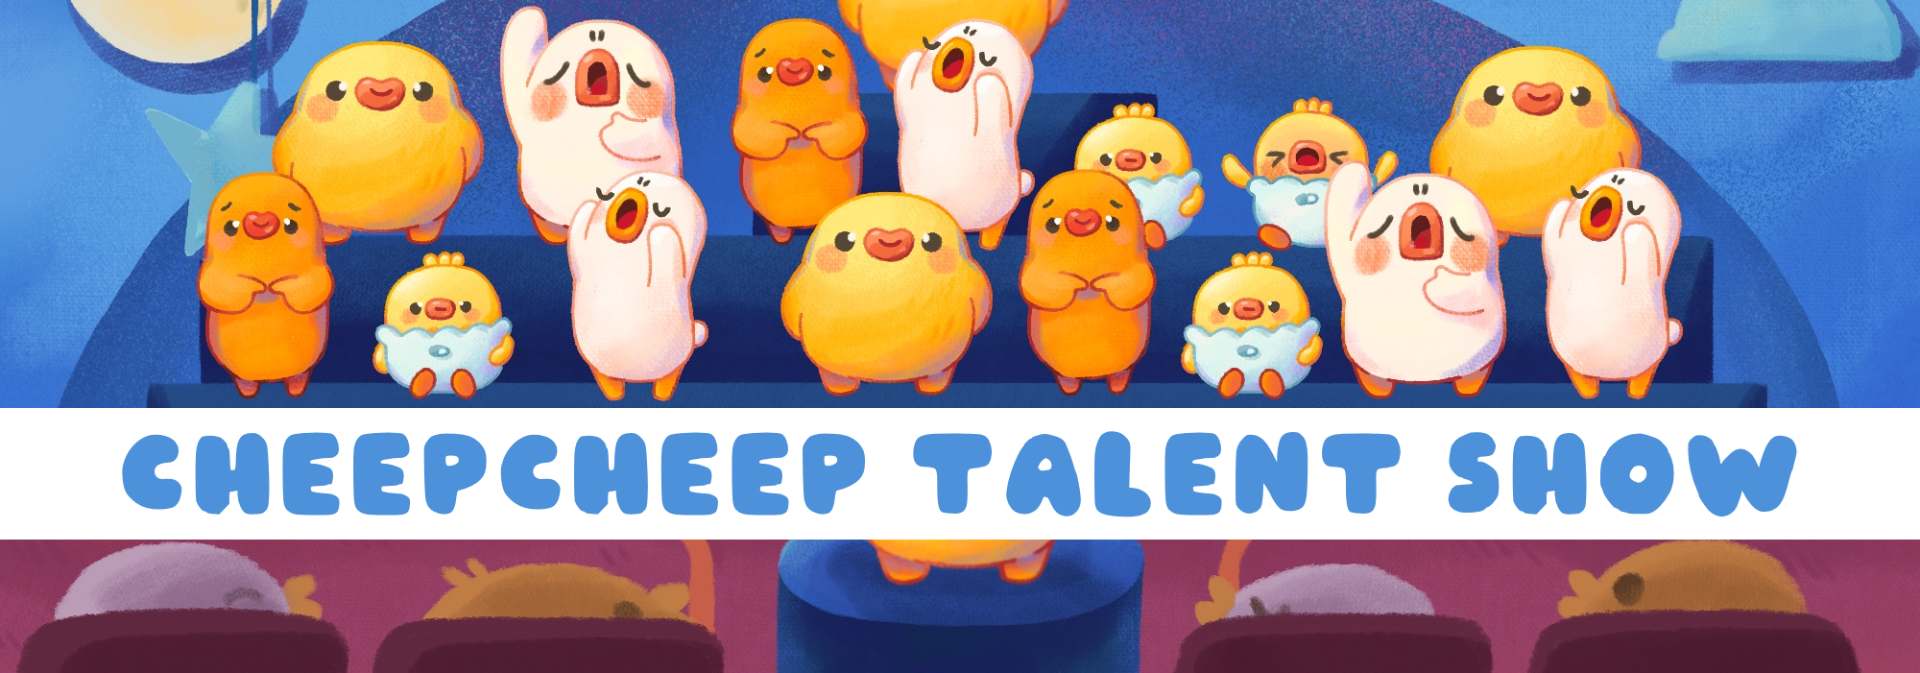 Cheep Cheep Talent Show